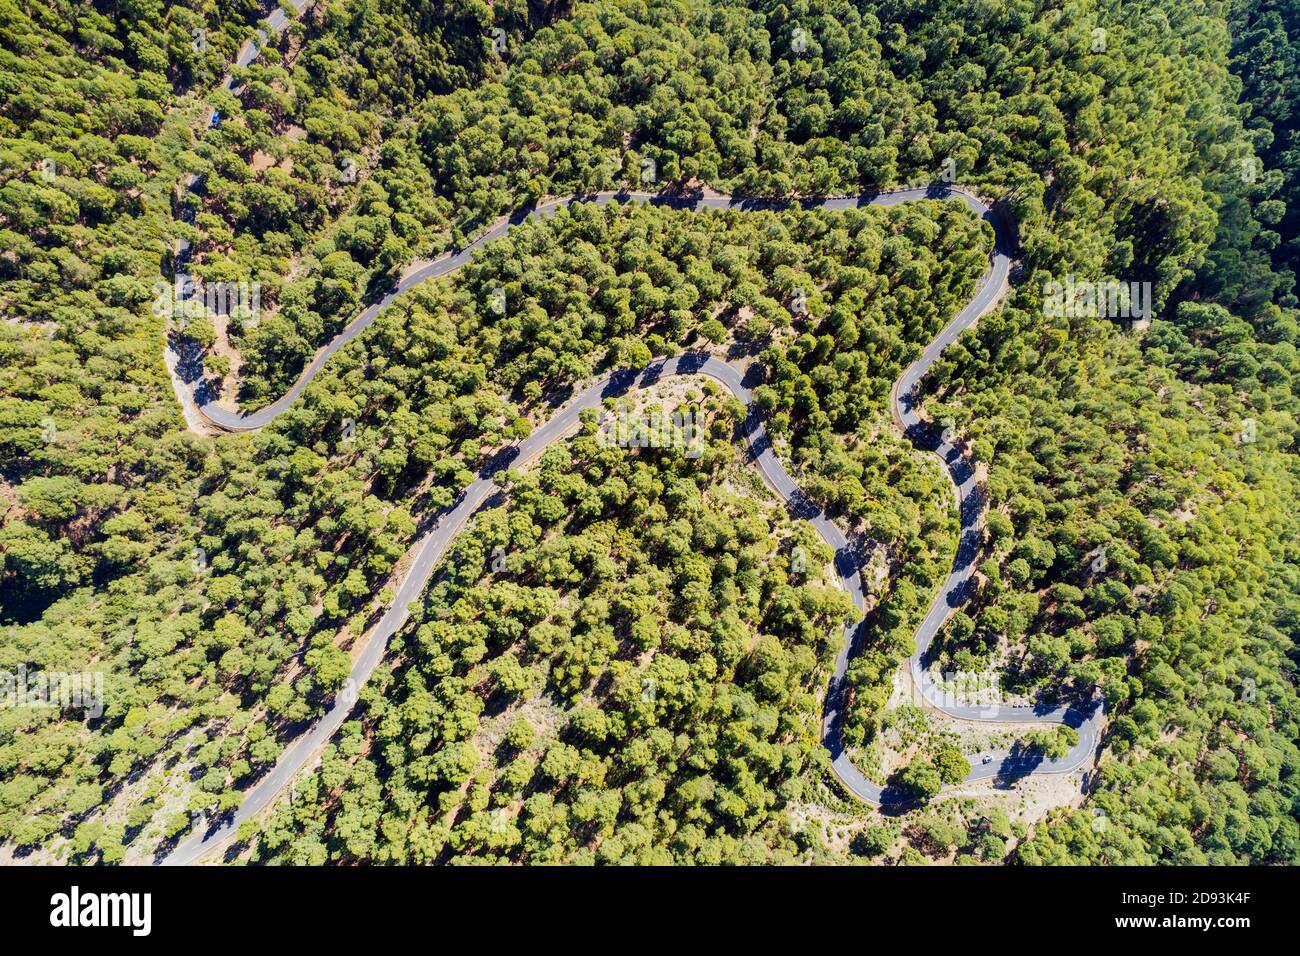 L'Europe, Espagne, Canaries, La Palma, site de la biosphère de l'Unesco, vue aérienne d'une route de montagne sinueuse Banque D'Images